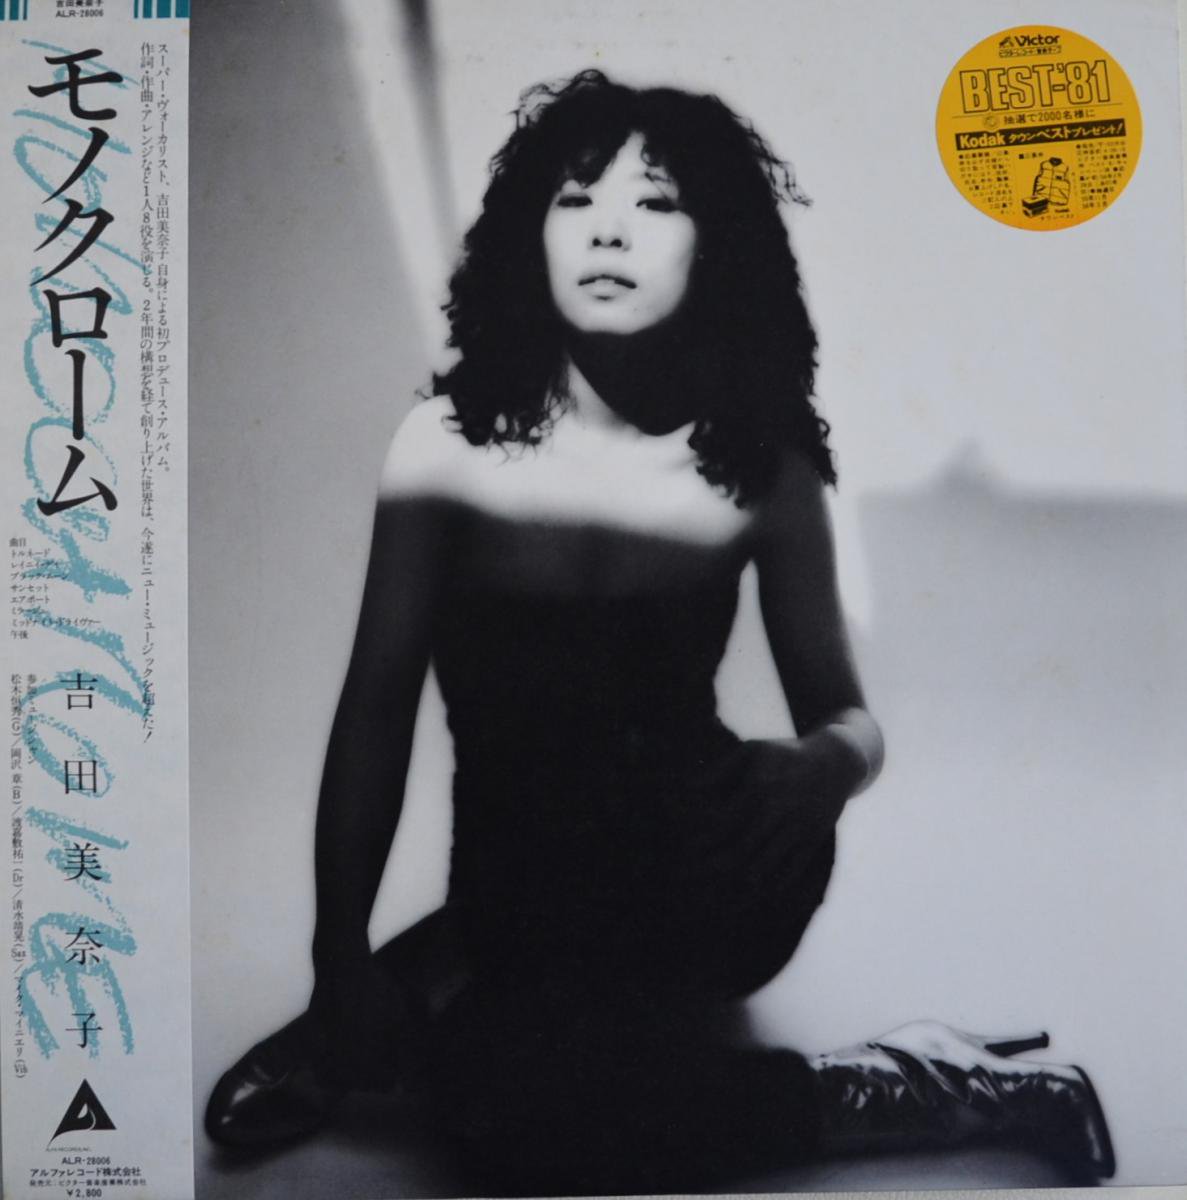 吉田美奈子 モノクローム レコード - 邦楽